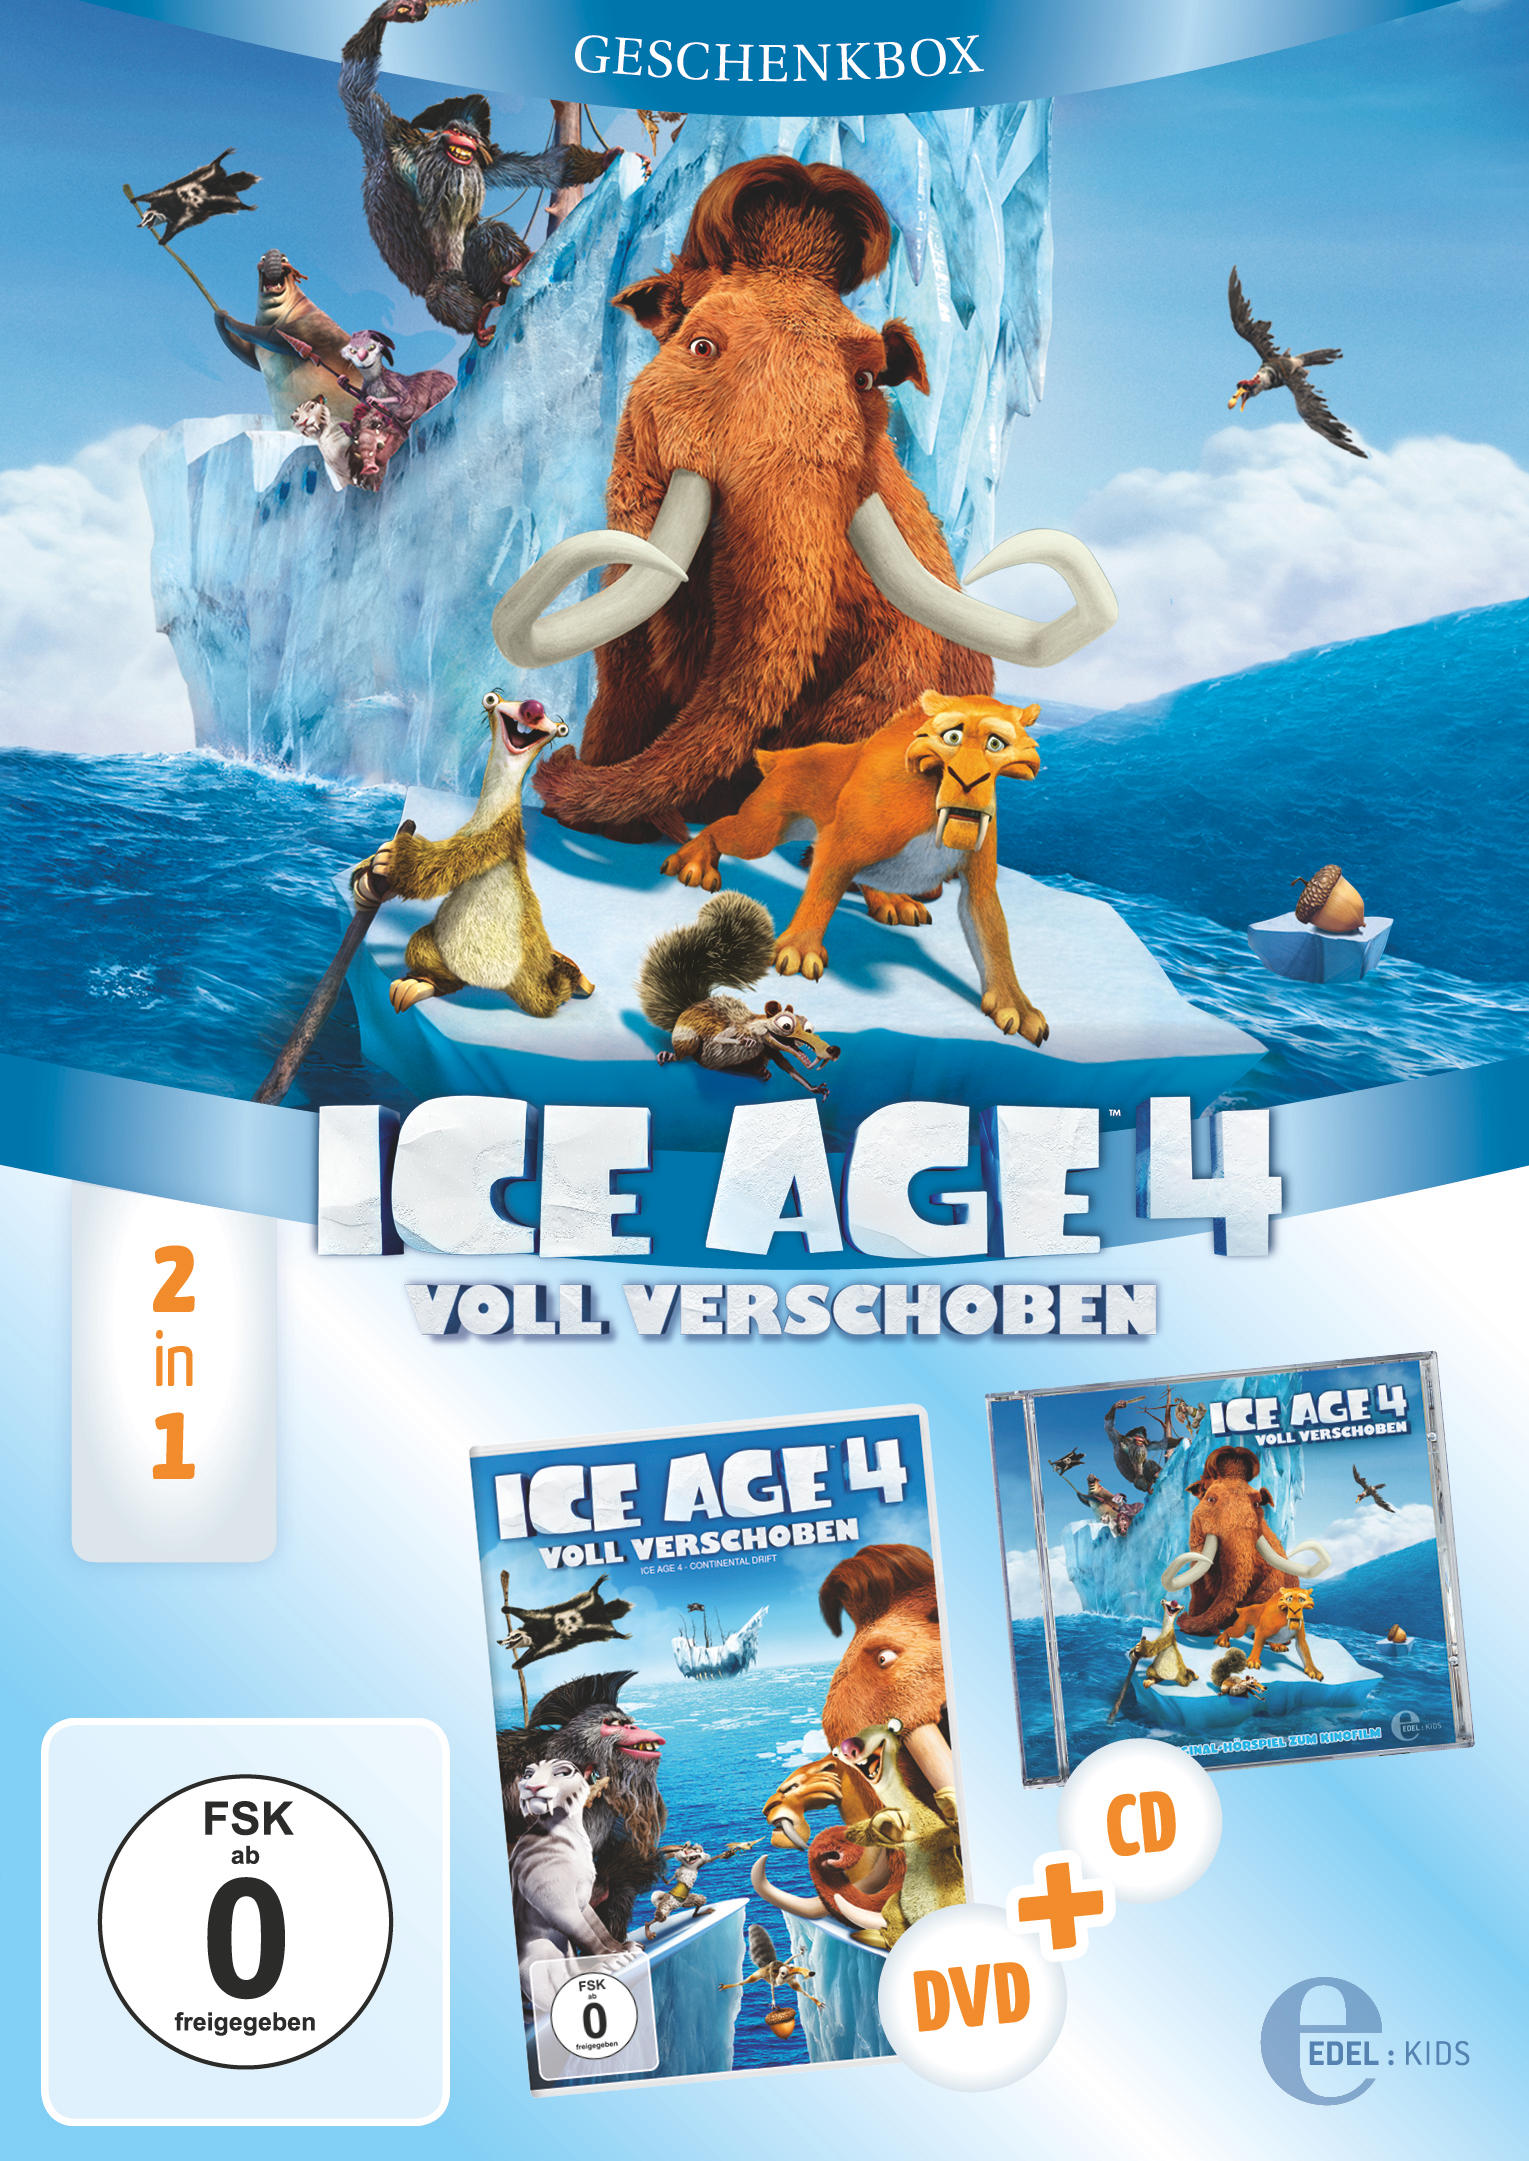 Ice Age Geschenkbox 4 CD + DVD